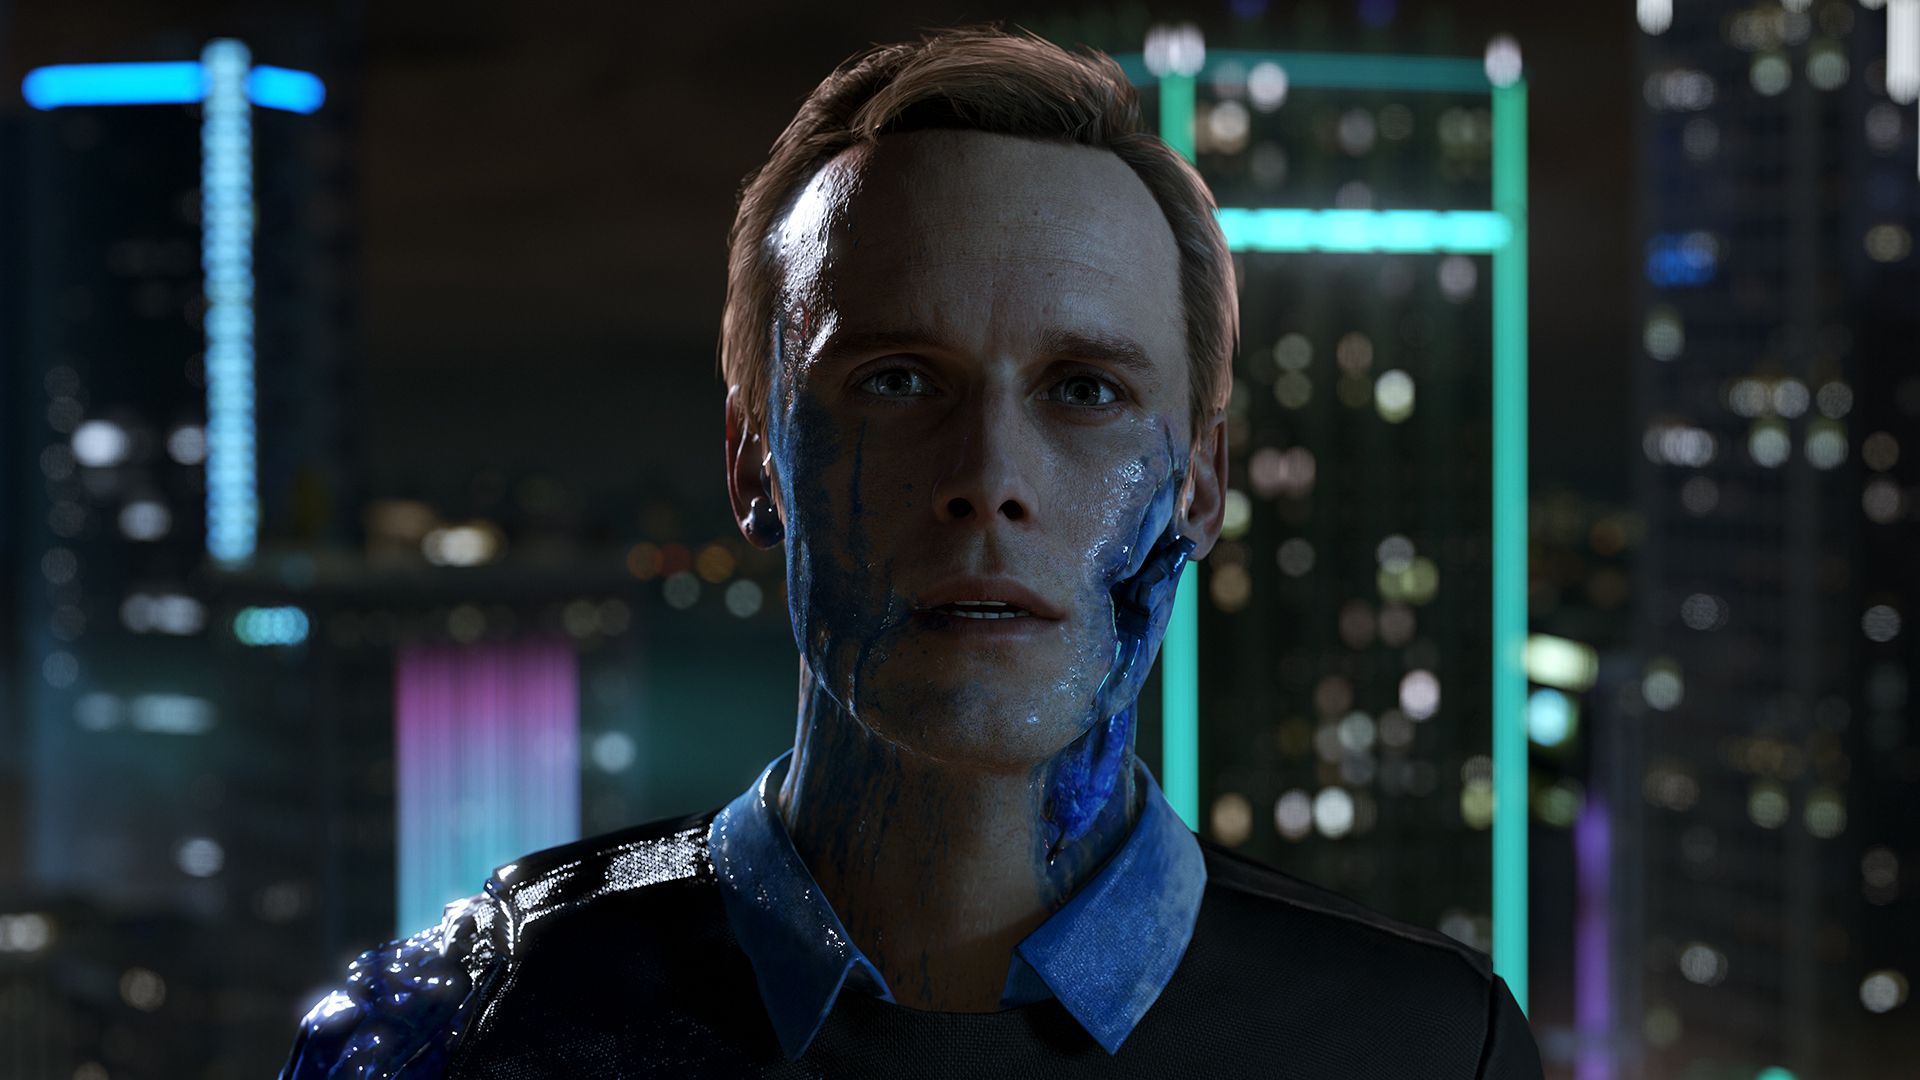 Detroit Become Human ganha gameplay demonstrando o efeito das escolhas -  Combo Infinito